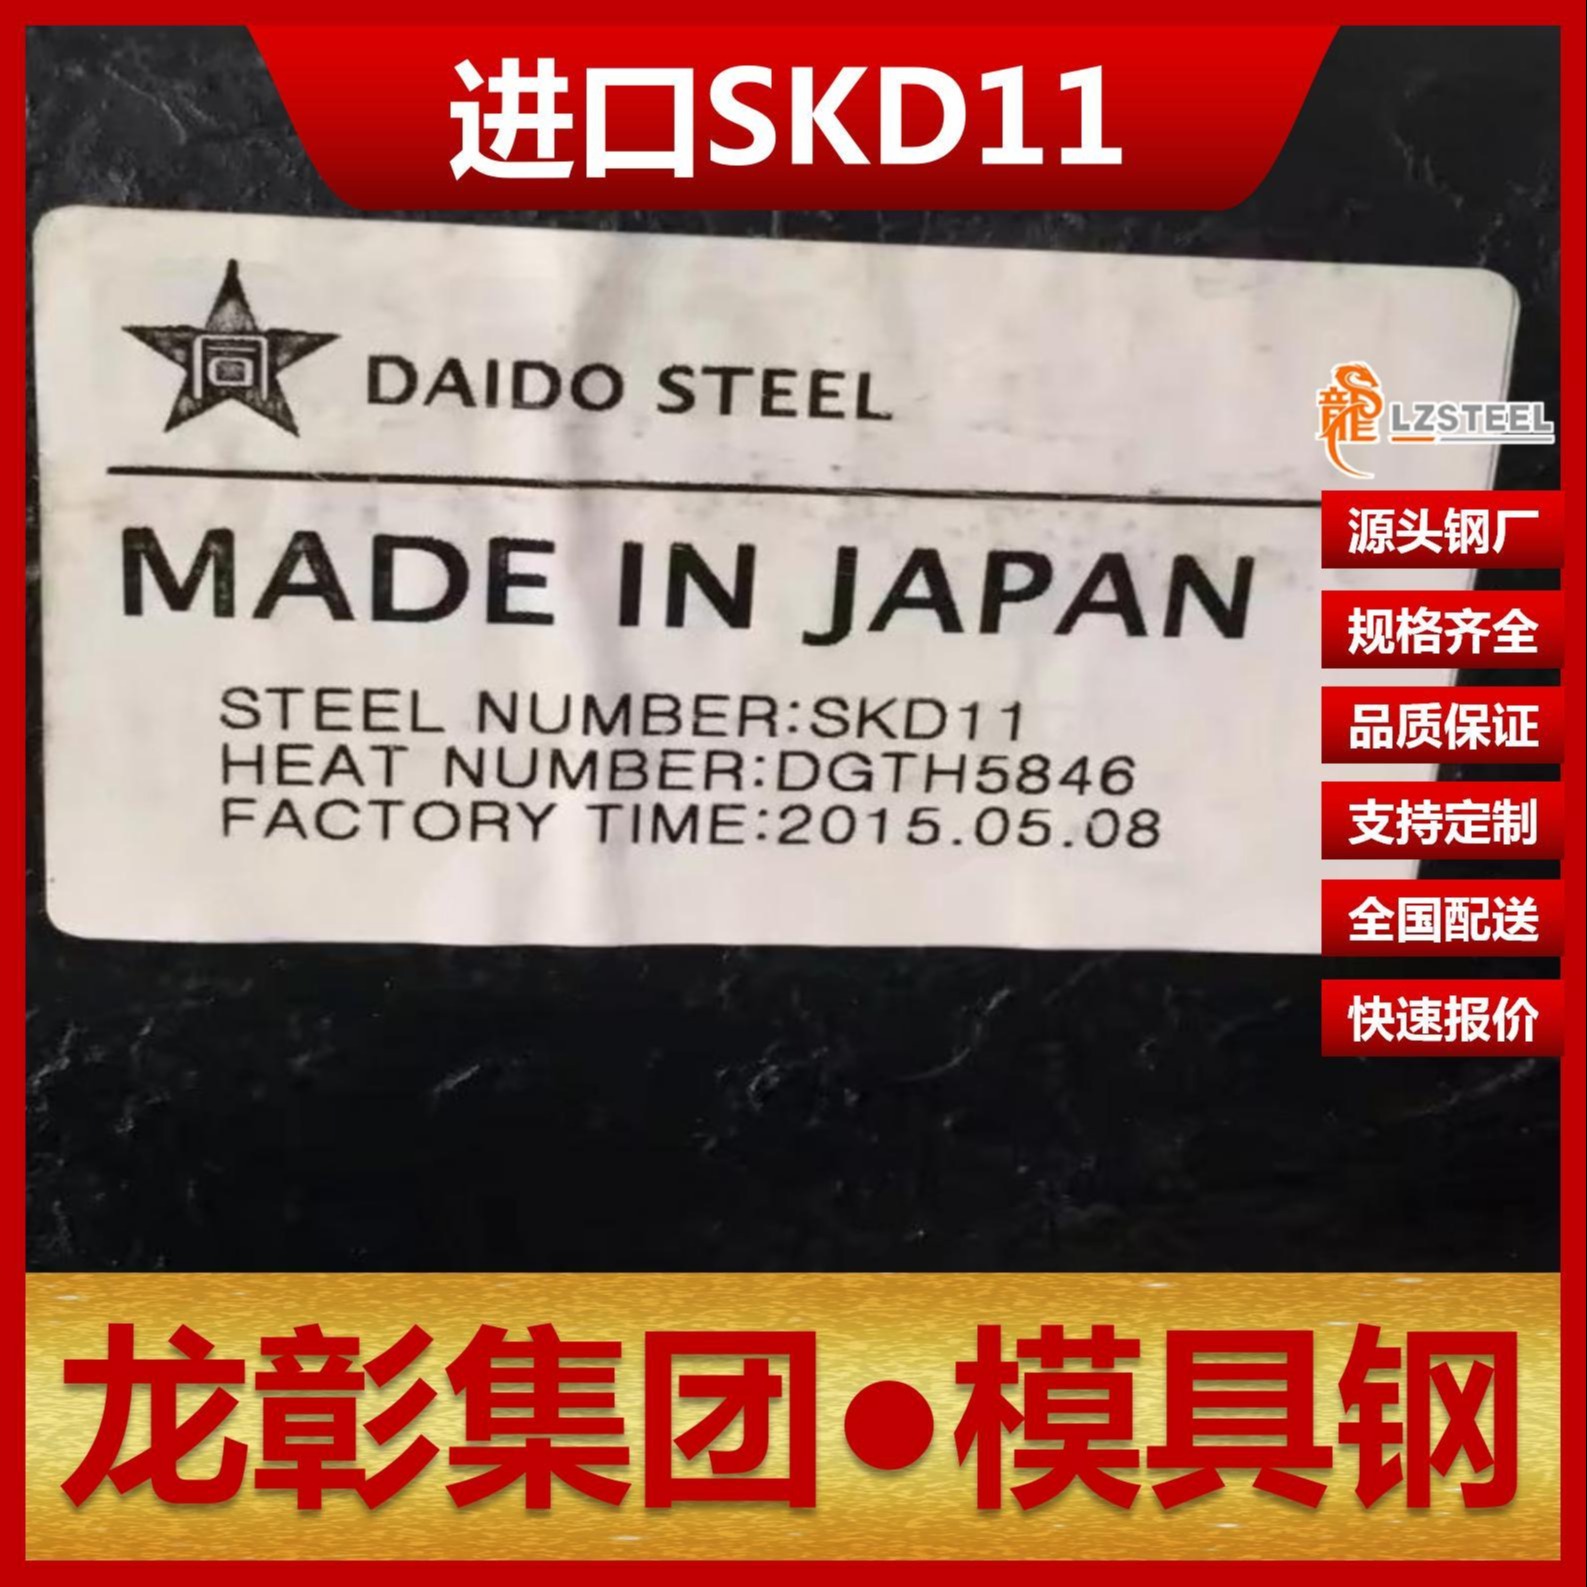 日本SKD11模具钢现货批零 龙彰集团主营SKD11扁钢圆棒模具钢